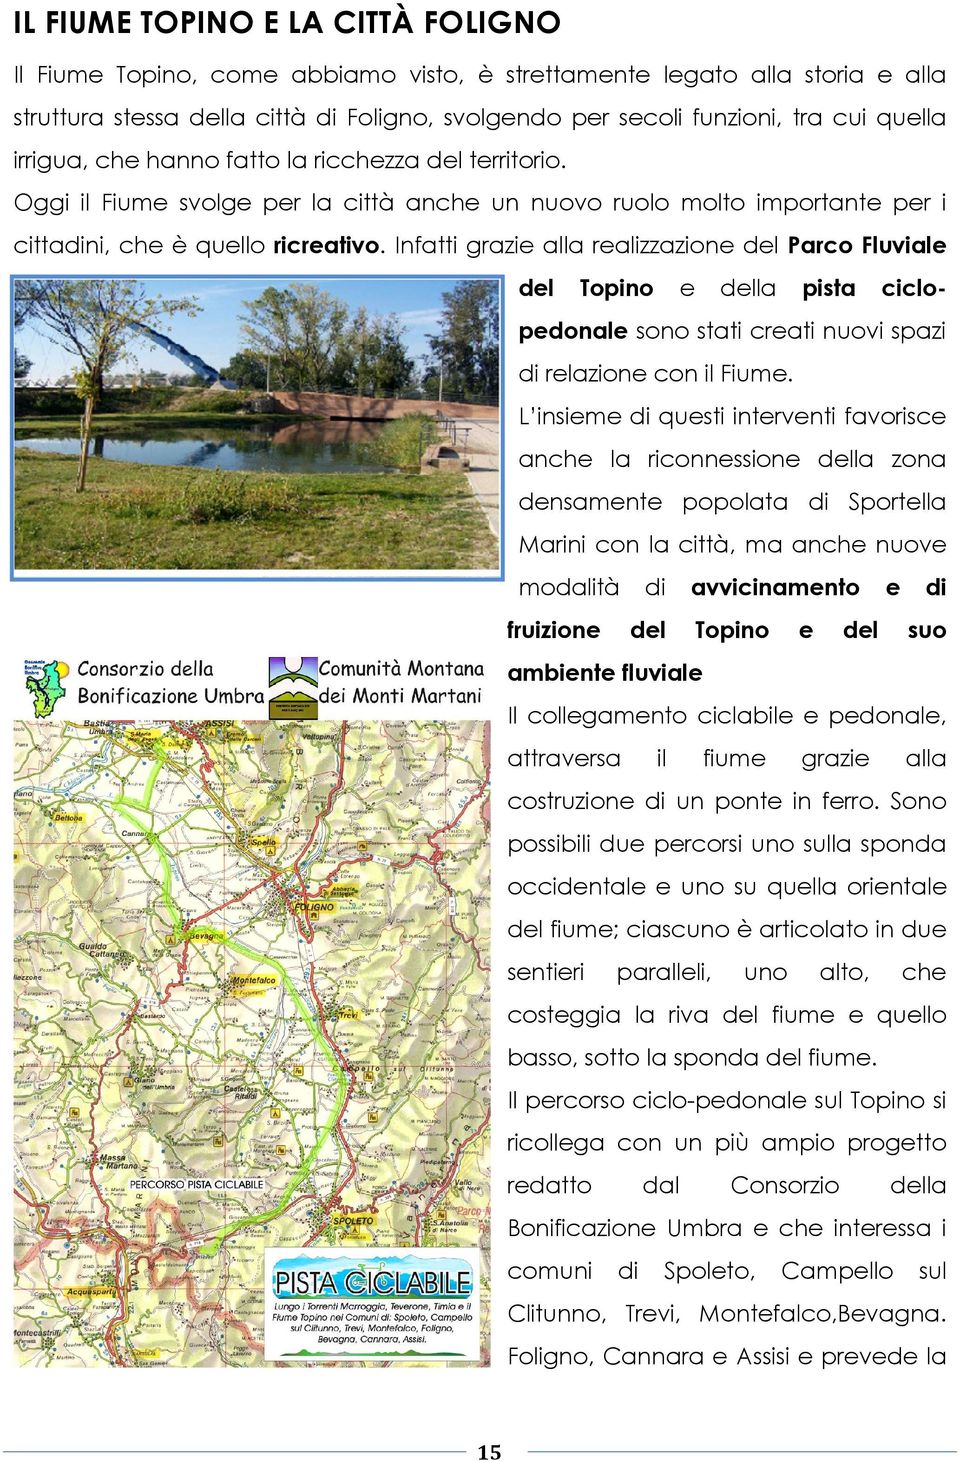 Infatti grazie alla realizzazione del Parco Fluviale del Topino e pista della ciclo- pedonale sono stati creati nuovi spazi di relazione con il Fiume.